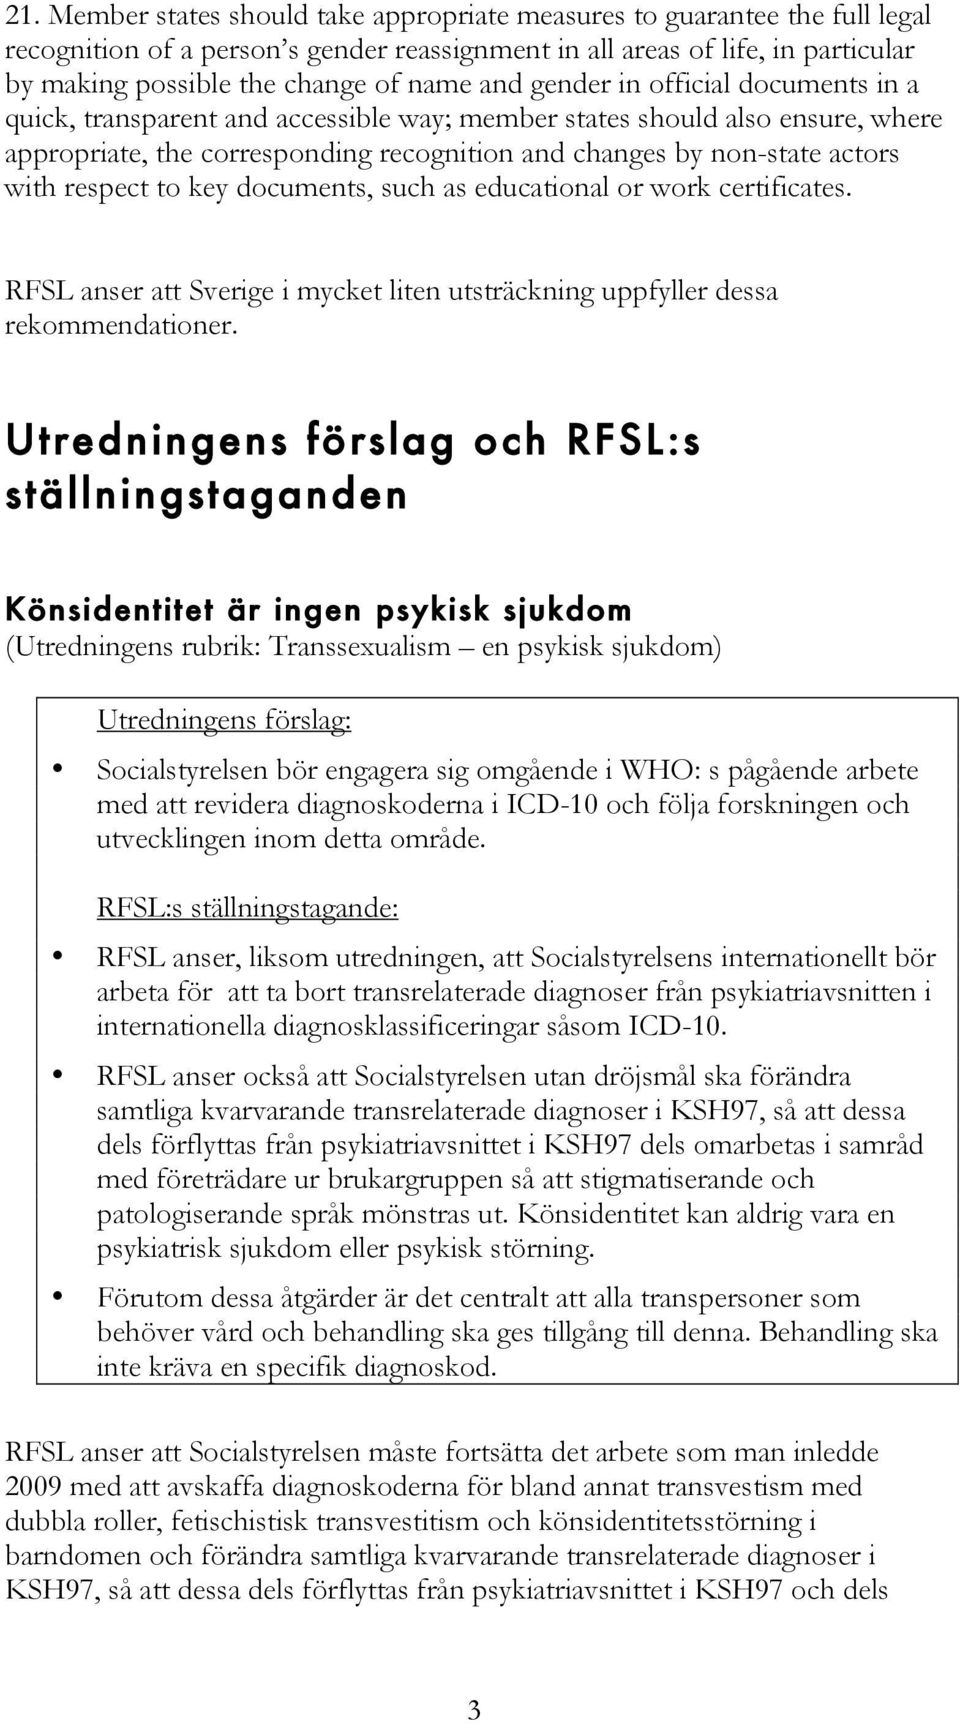 respect to key documents, such as educational or work certificates. RFSL anser att Sverige i mycket liten utsträckning uppfyller dessa rekommendationer.